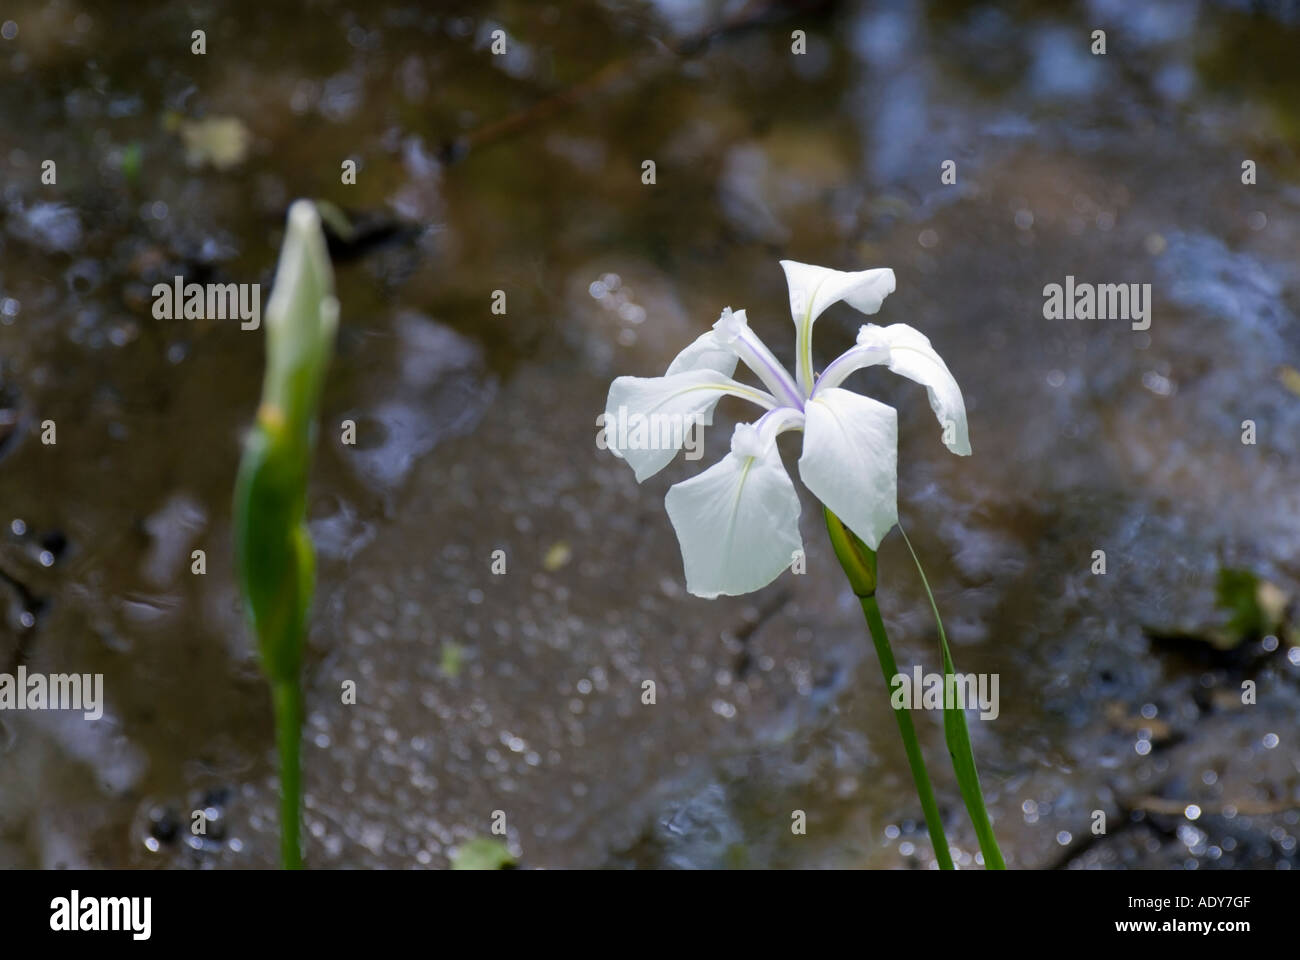 Iris laevigata alboviolaceum Stock Photo